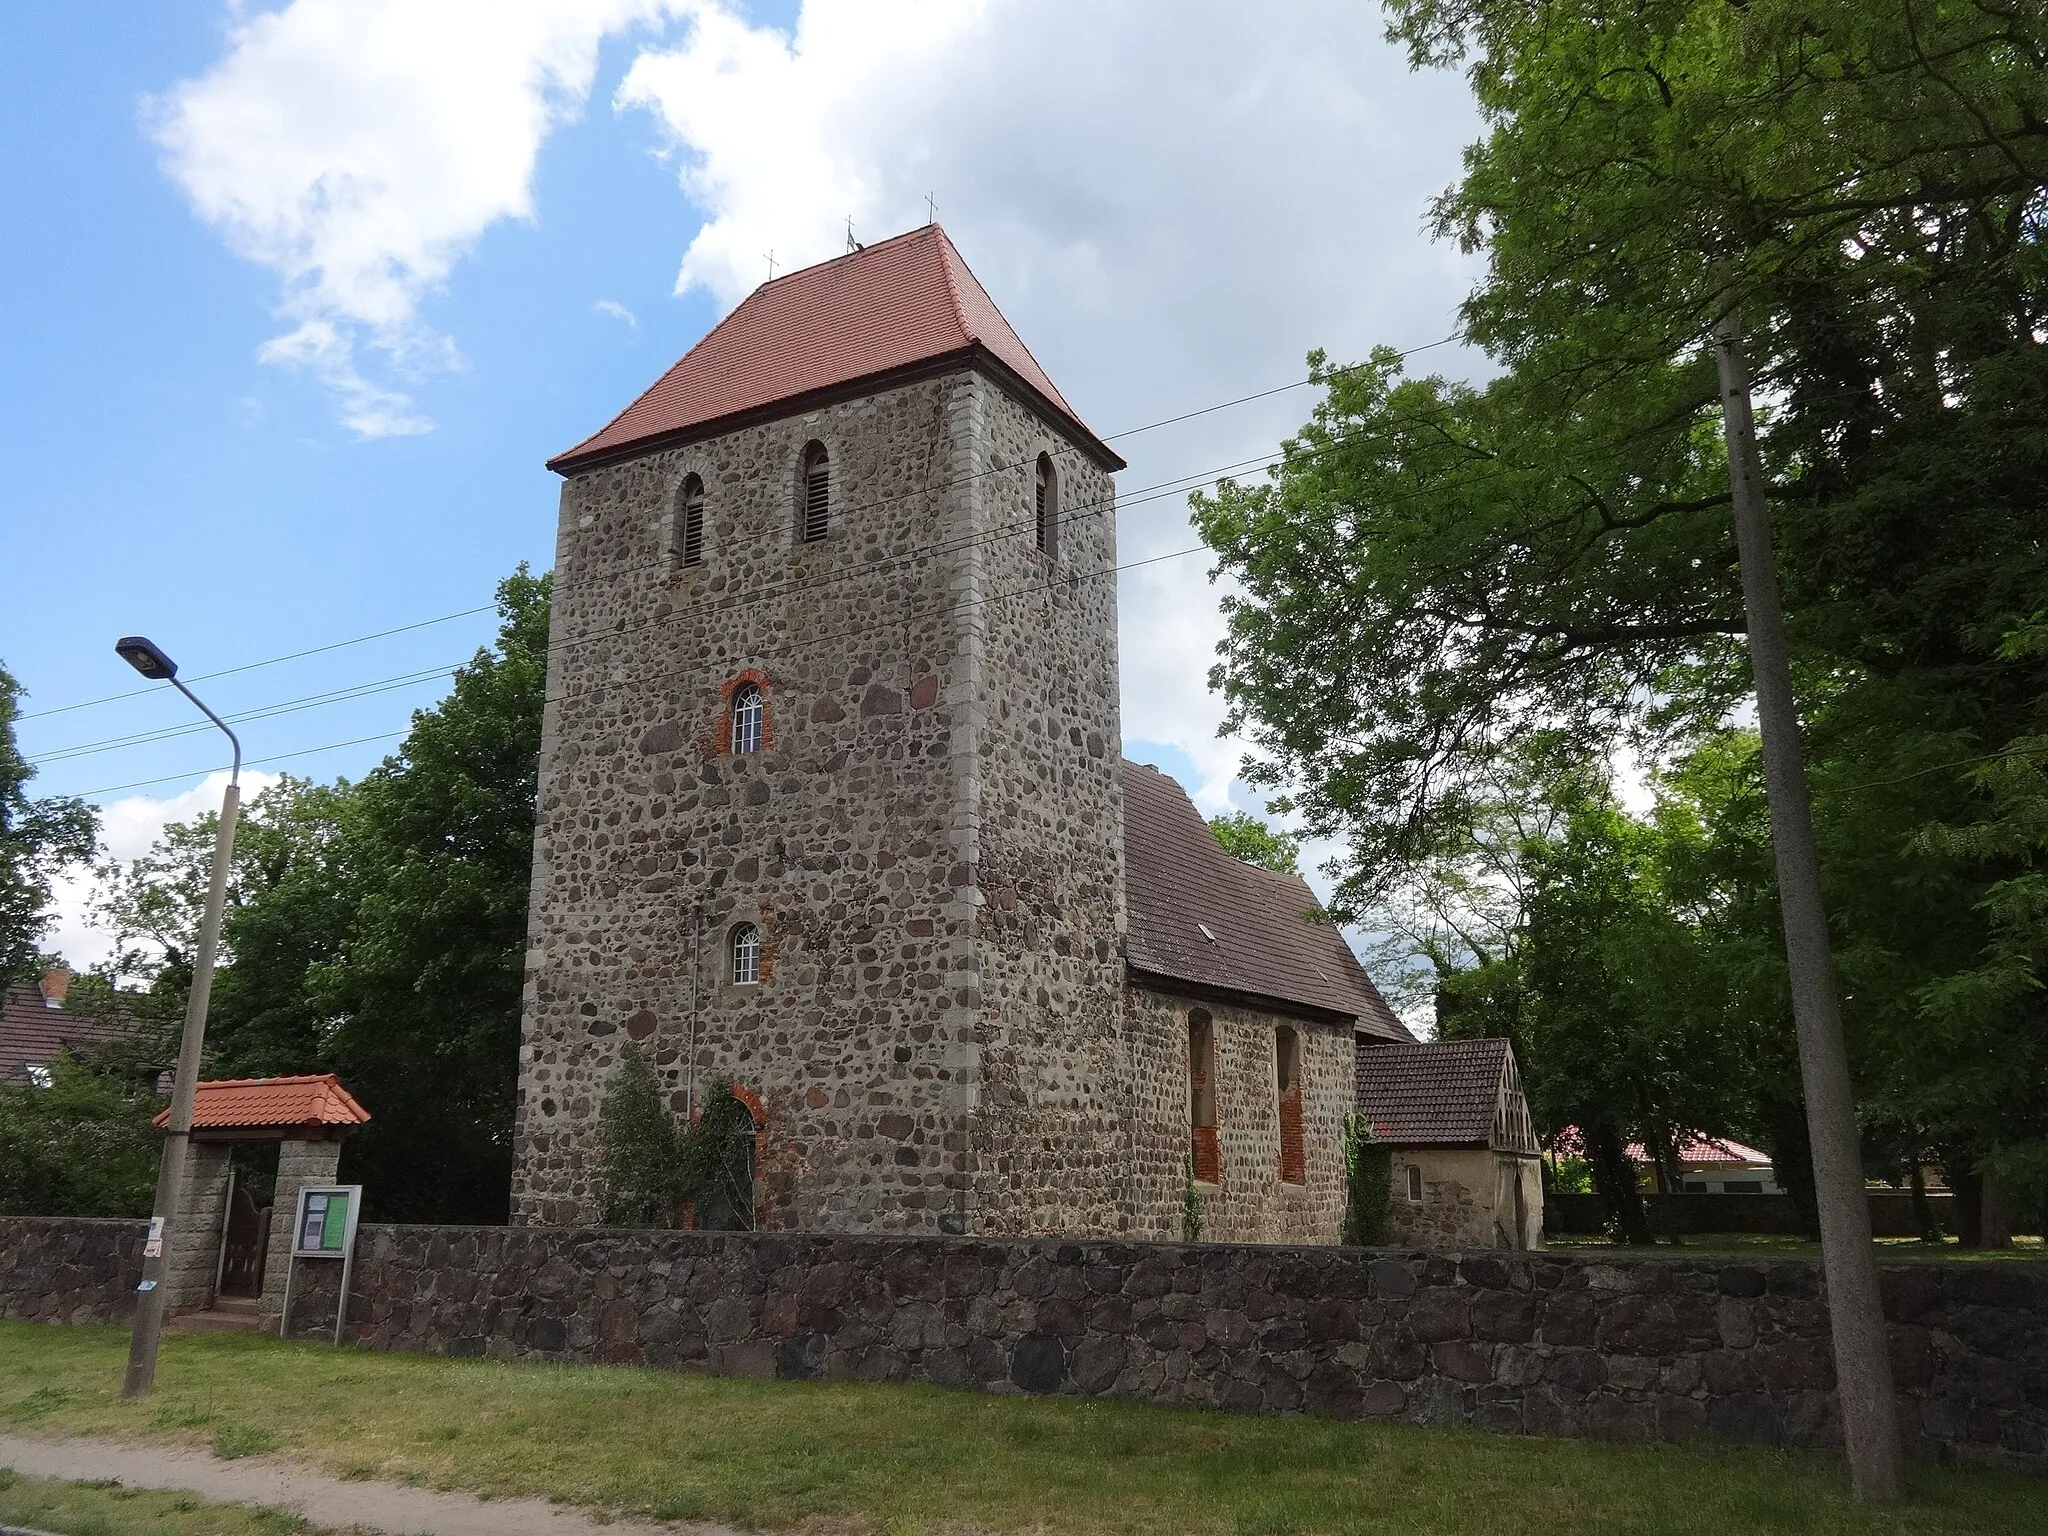 Photo showing: Die Kirche Rehfelde ist eine Chorquadratkirche, die in der zweiten Hälfte des 13. Jahrhunderts als regelmäßig geschichteten Feldsteinen errichtet wurde. Der Turm entstand zu einem späteren Zeitpunkt. In der flach gedeckten Kirche befinden sich eine Kanzel, ein Altar sowie eine Orgelempore aus dem Jahr 1722 sowie eine pokalförmige Fünte aus Rüdersdorfer Kalkstein